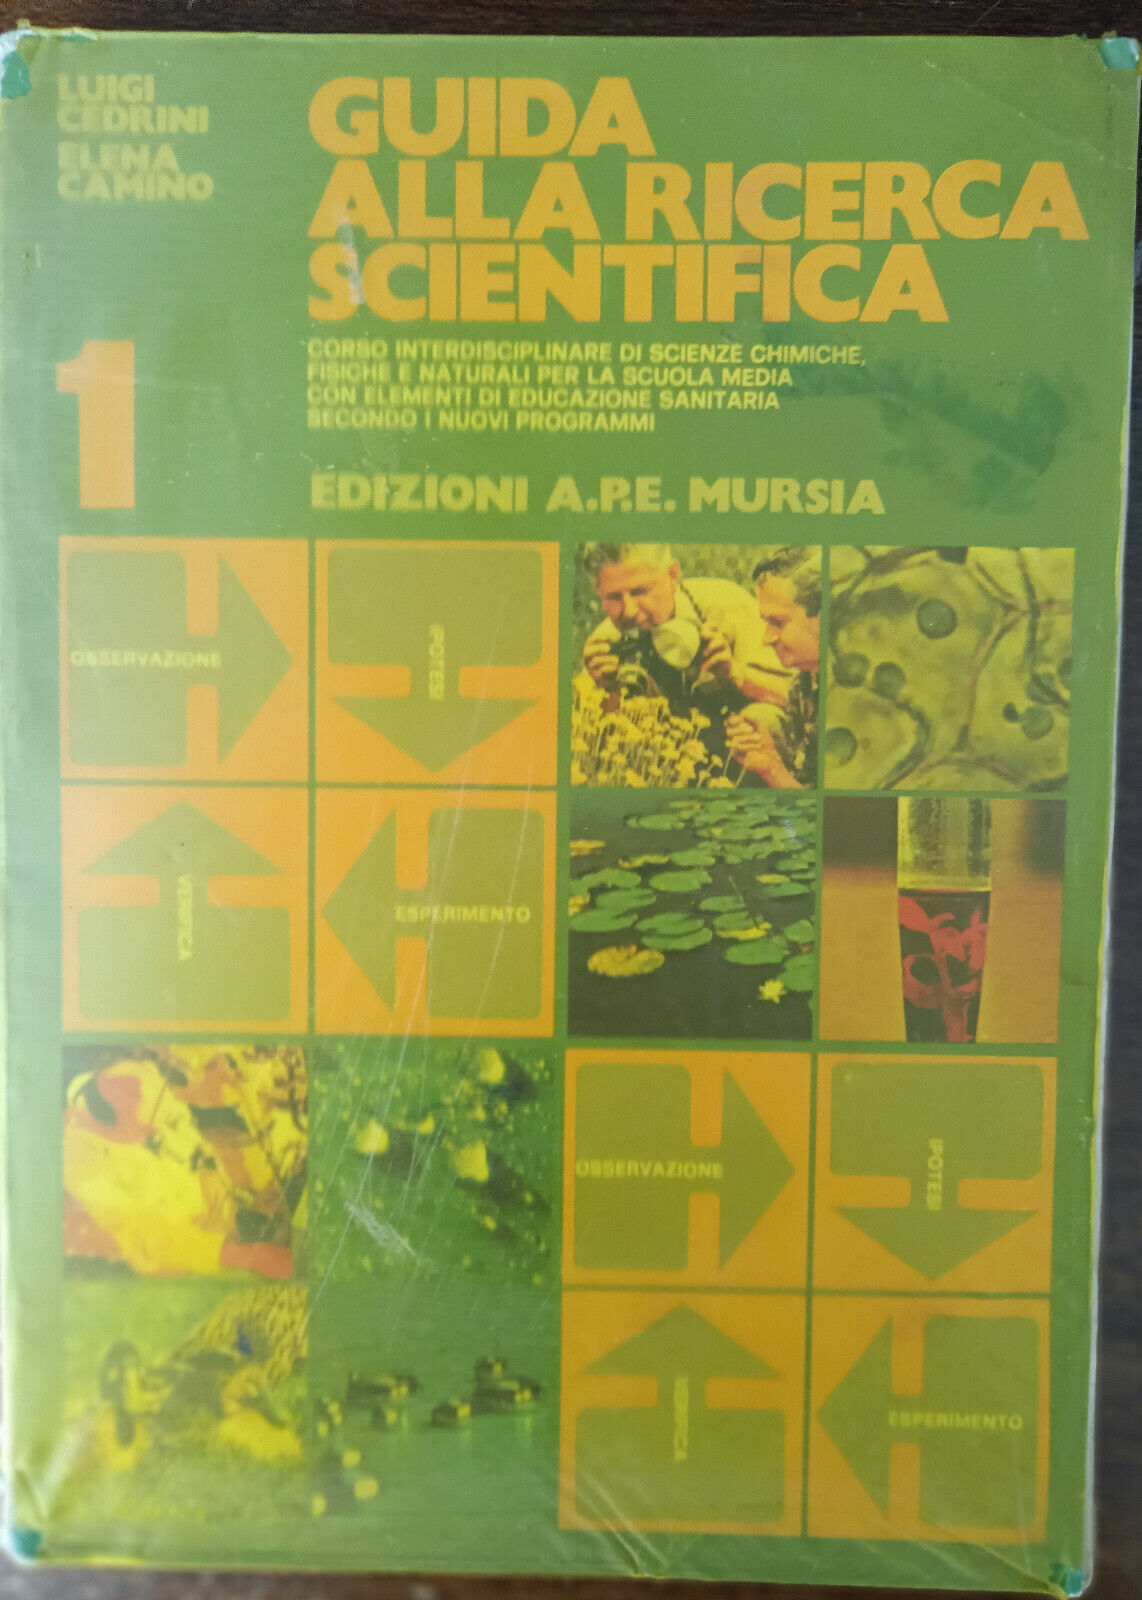 Guida alla ricerca scientifica 1 - Cedriani, Camino - A.P.E. Mursia, 1984 - A